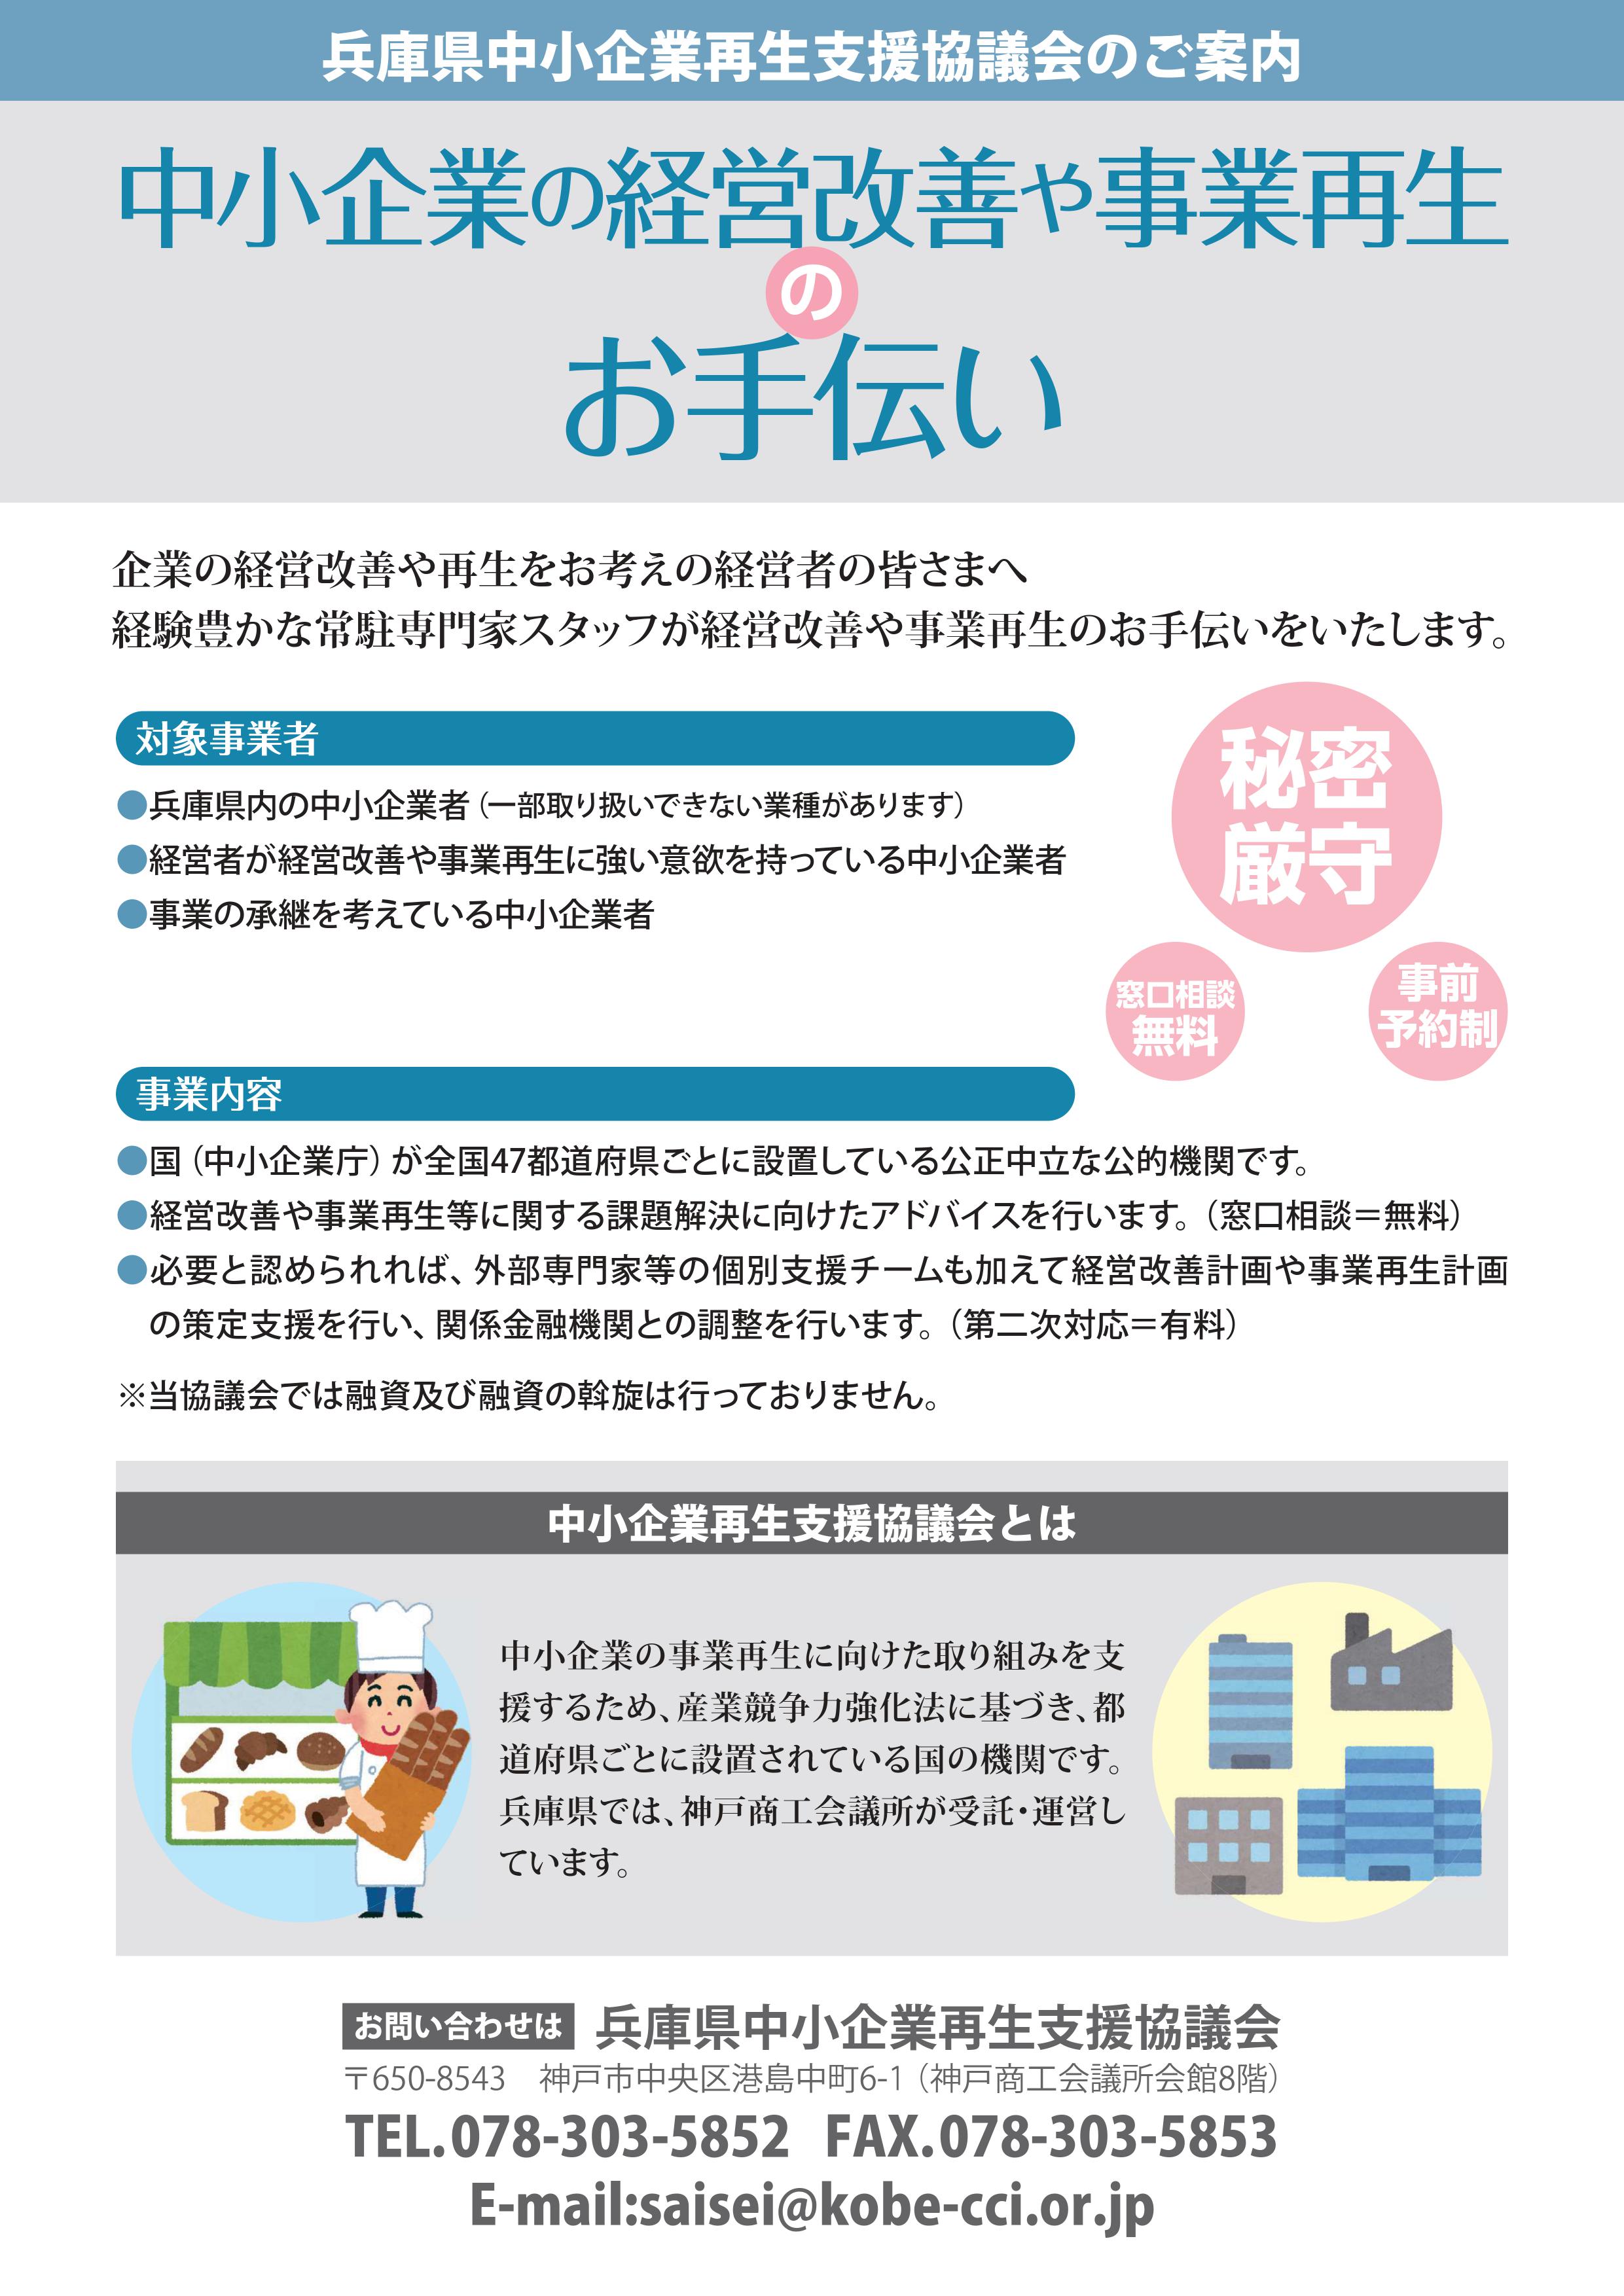 兵庫県中小企業再生支援協議会 神戸商工会議所